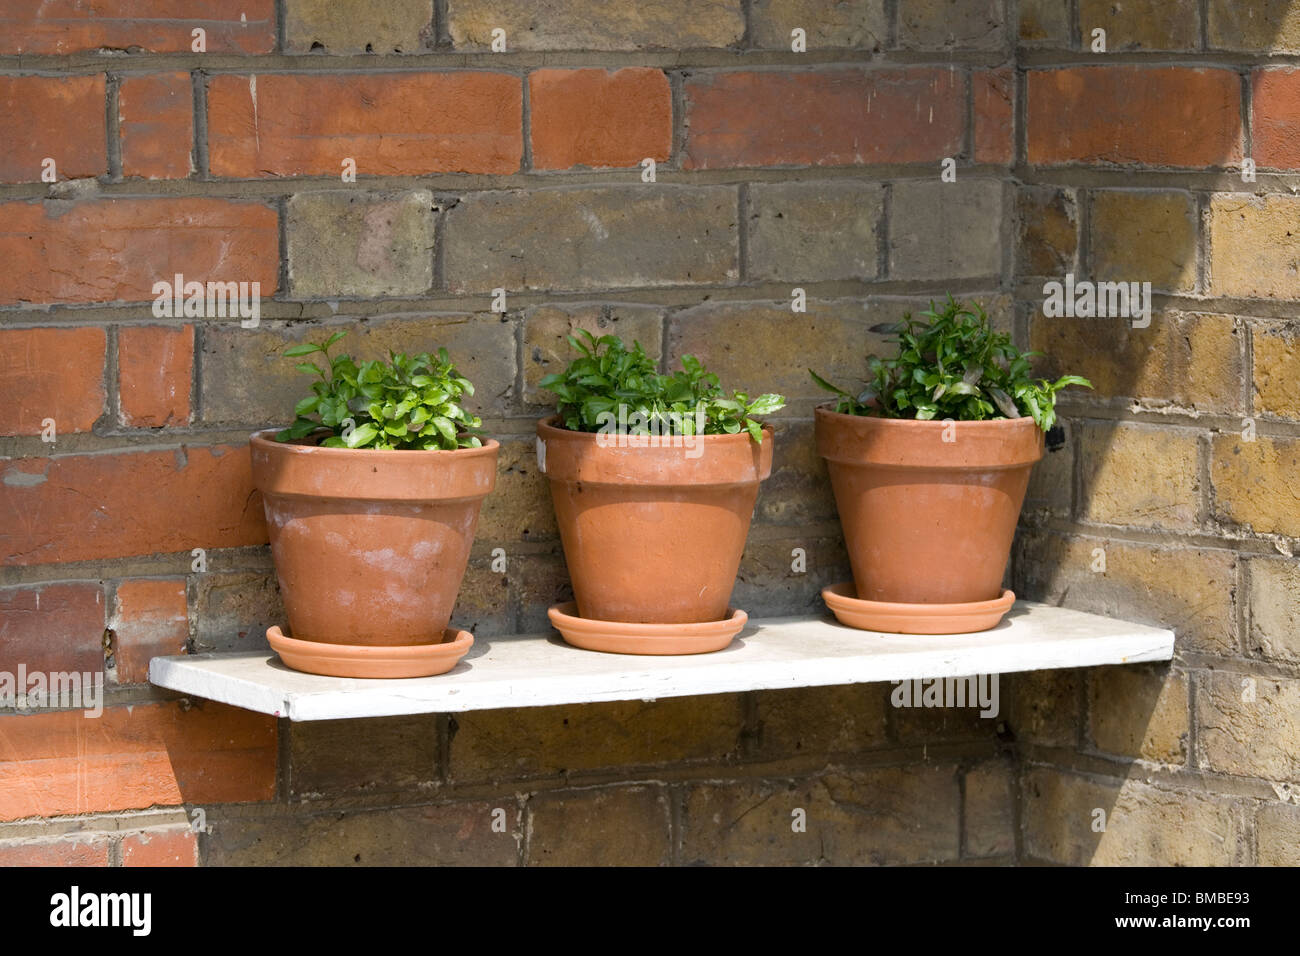 Tres macetas de terracota en un estante fuera de una casa adosada, un jardín minimalista. Foto de stock